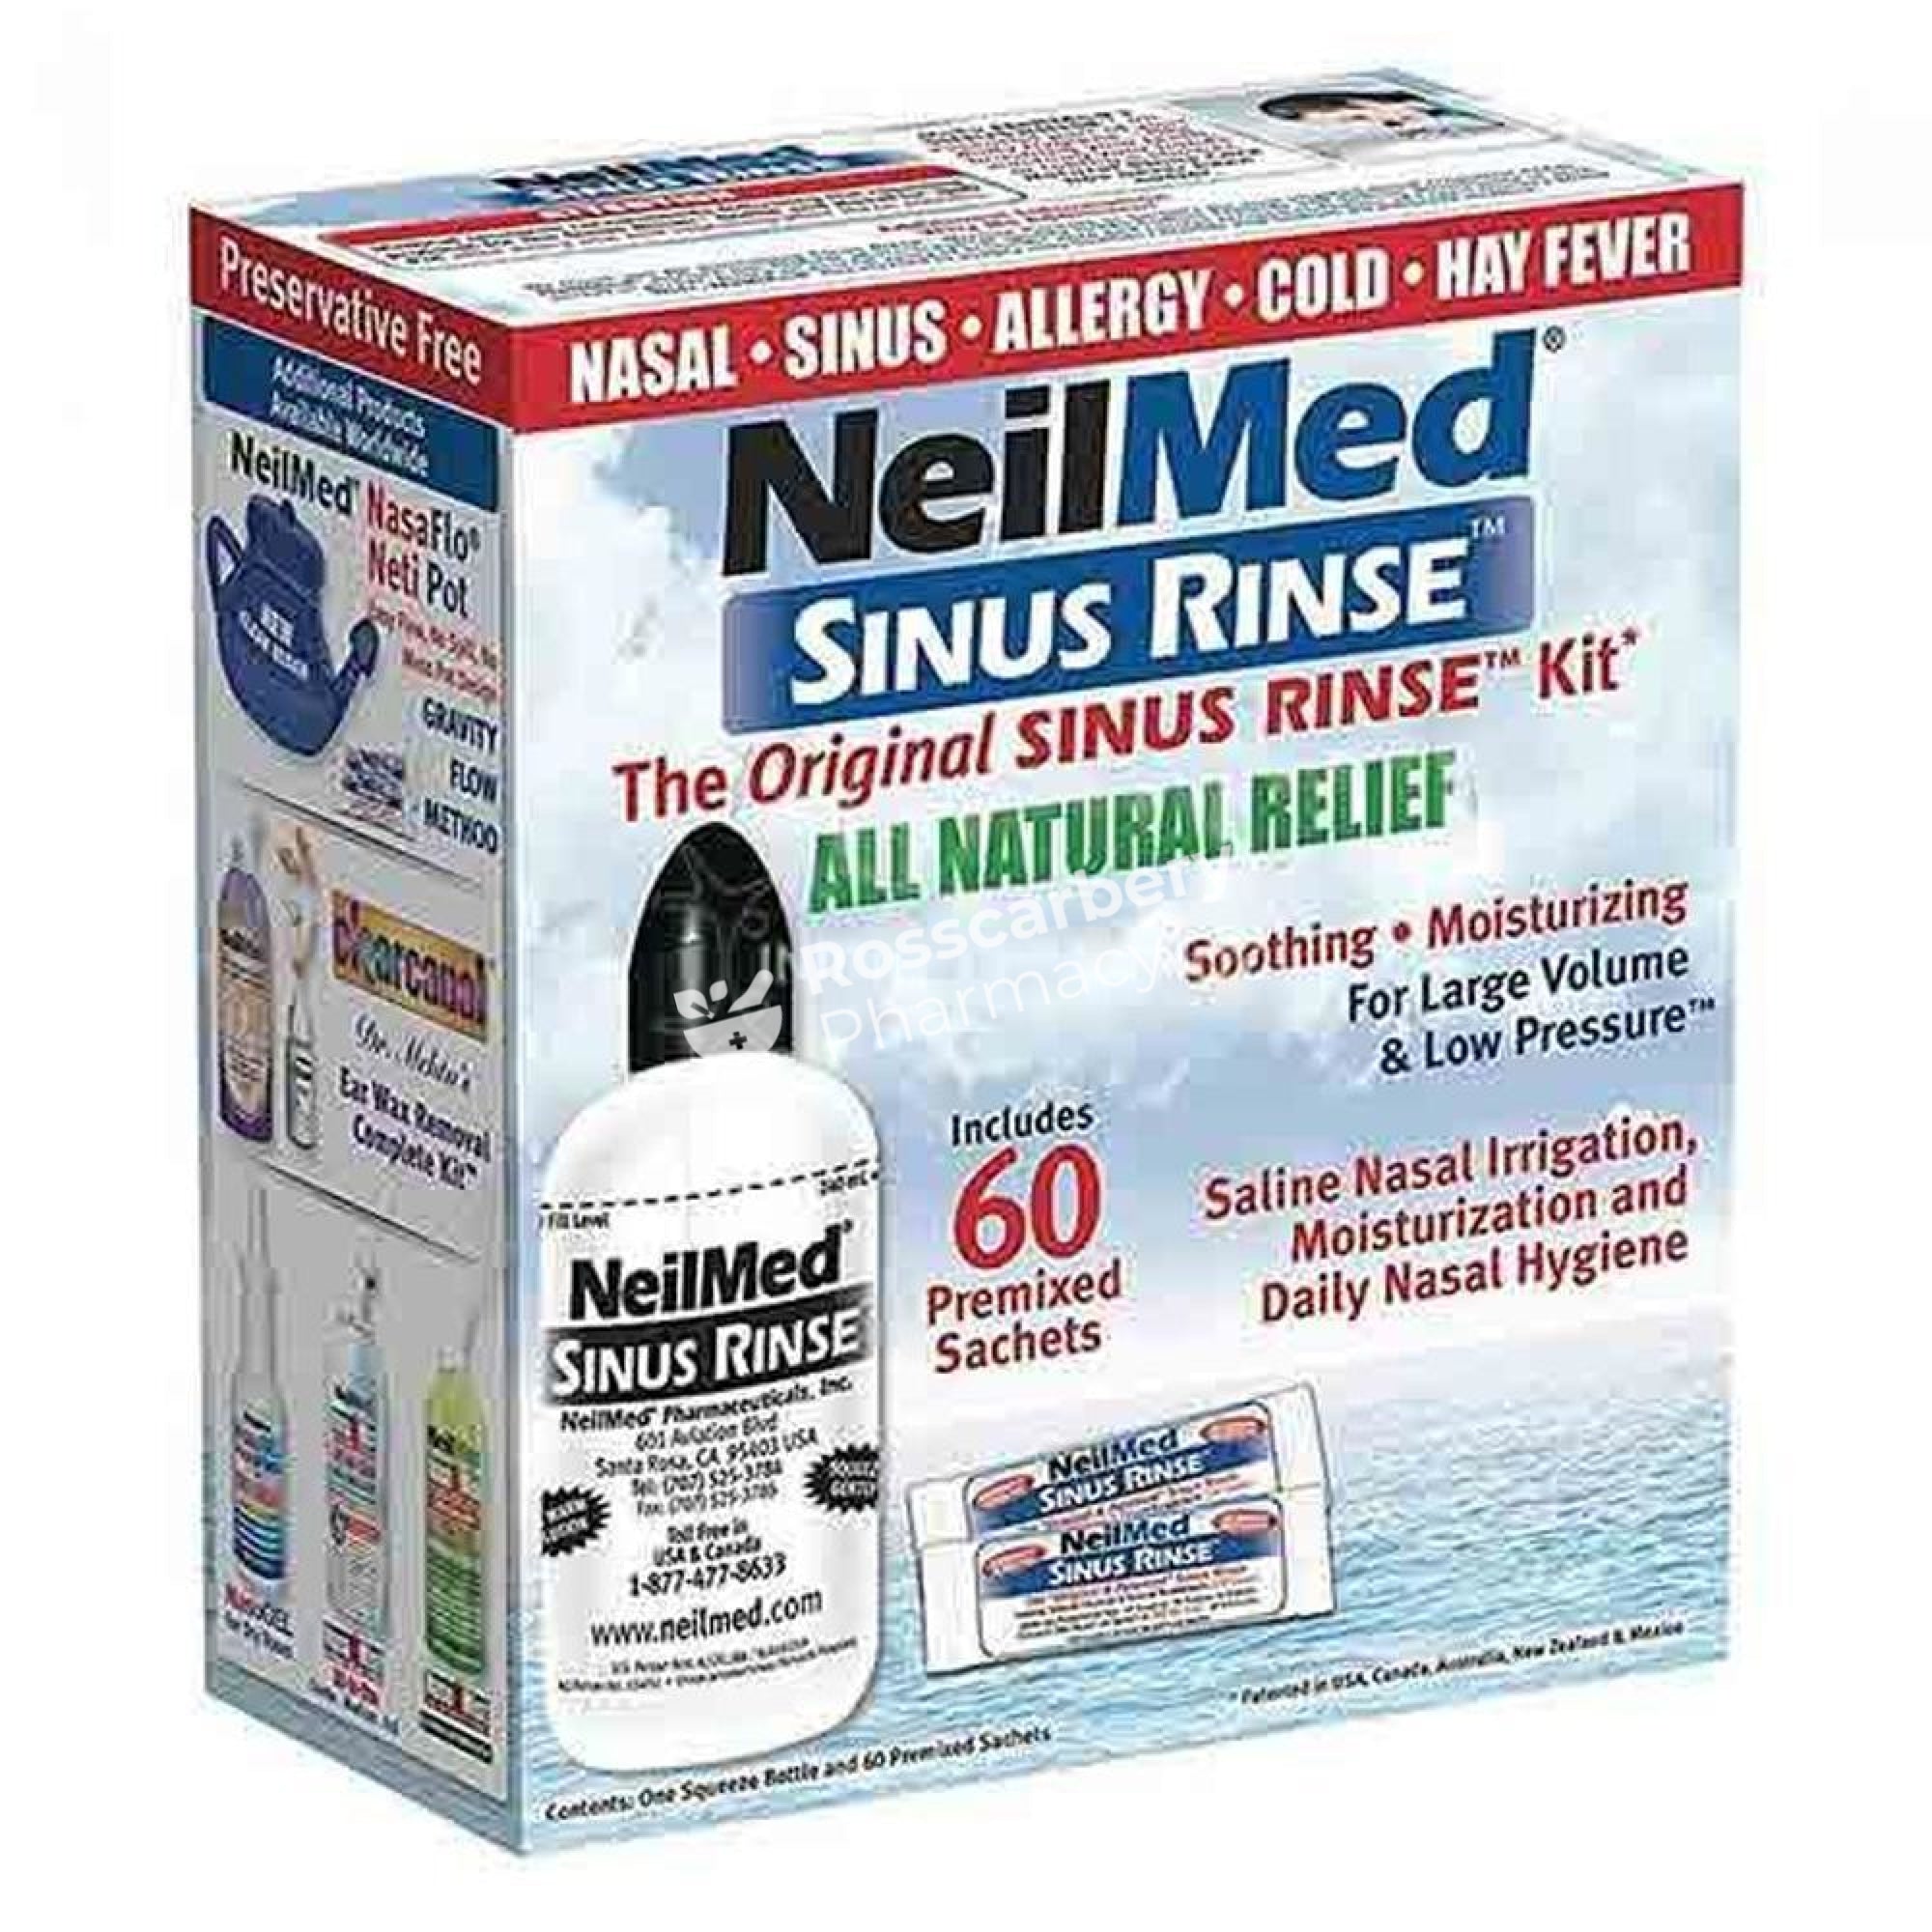 Neilmed Sinus Rinse Kit With 60 Premixed Sachets Blocked Nose &